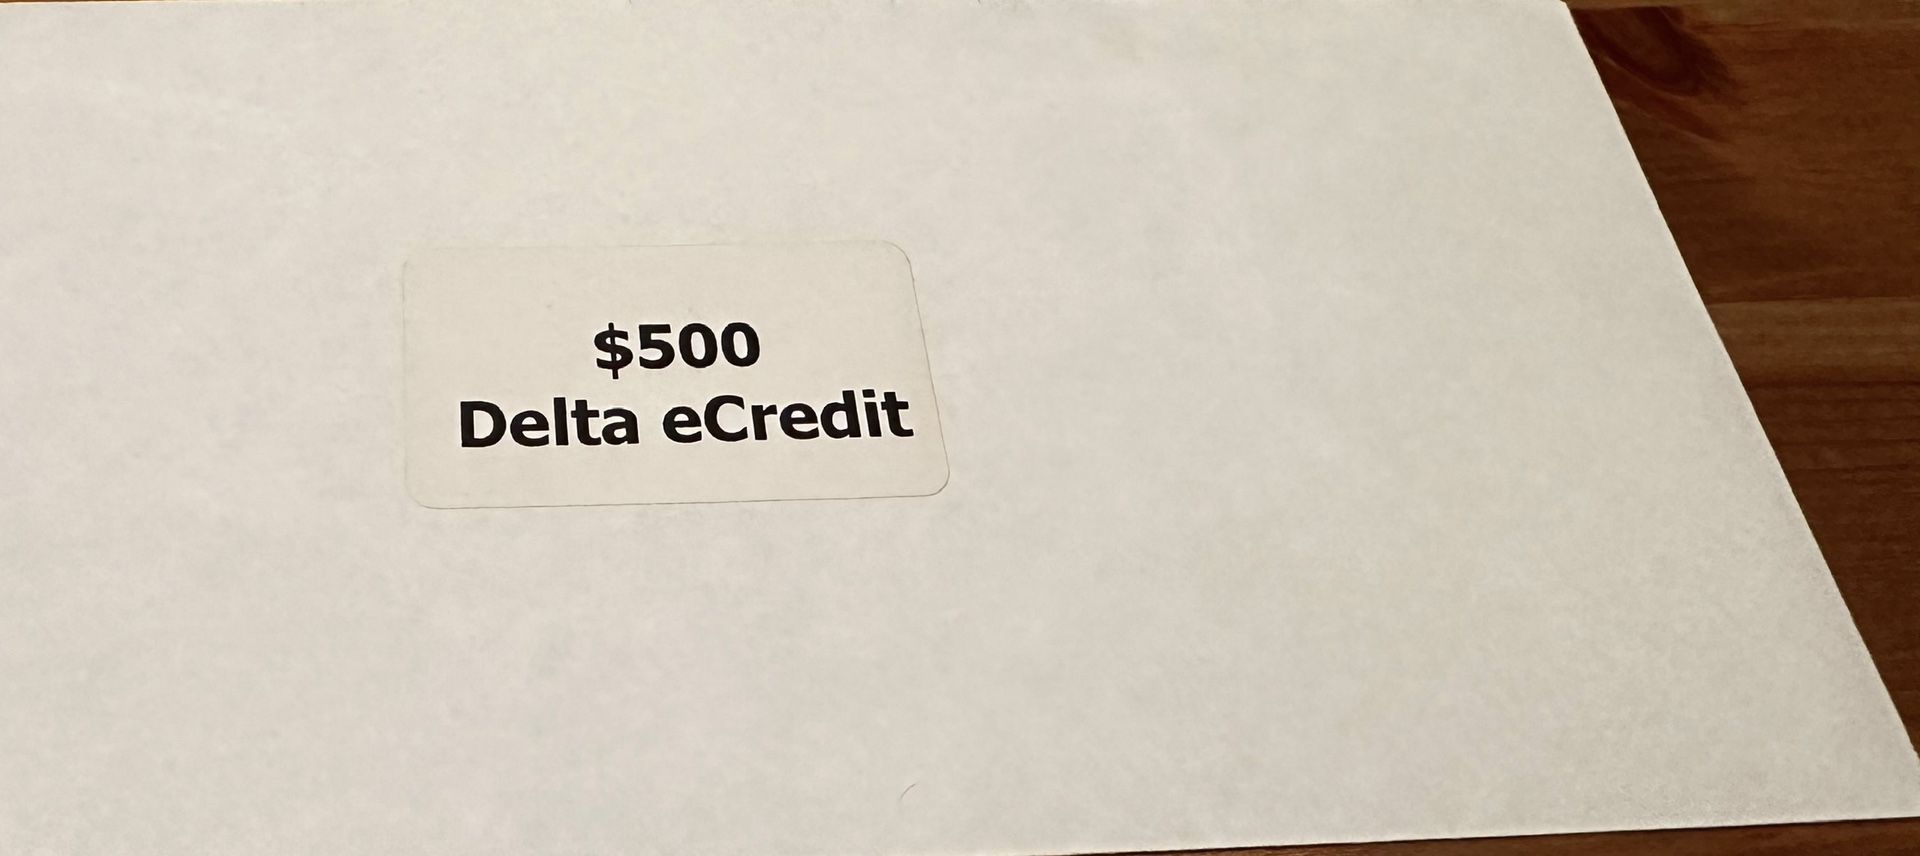 Delta $500 eCredit